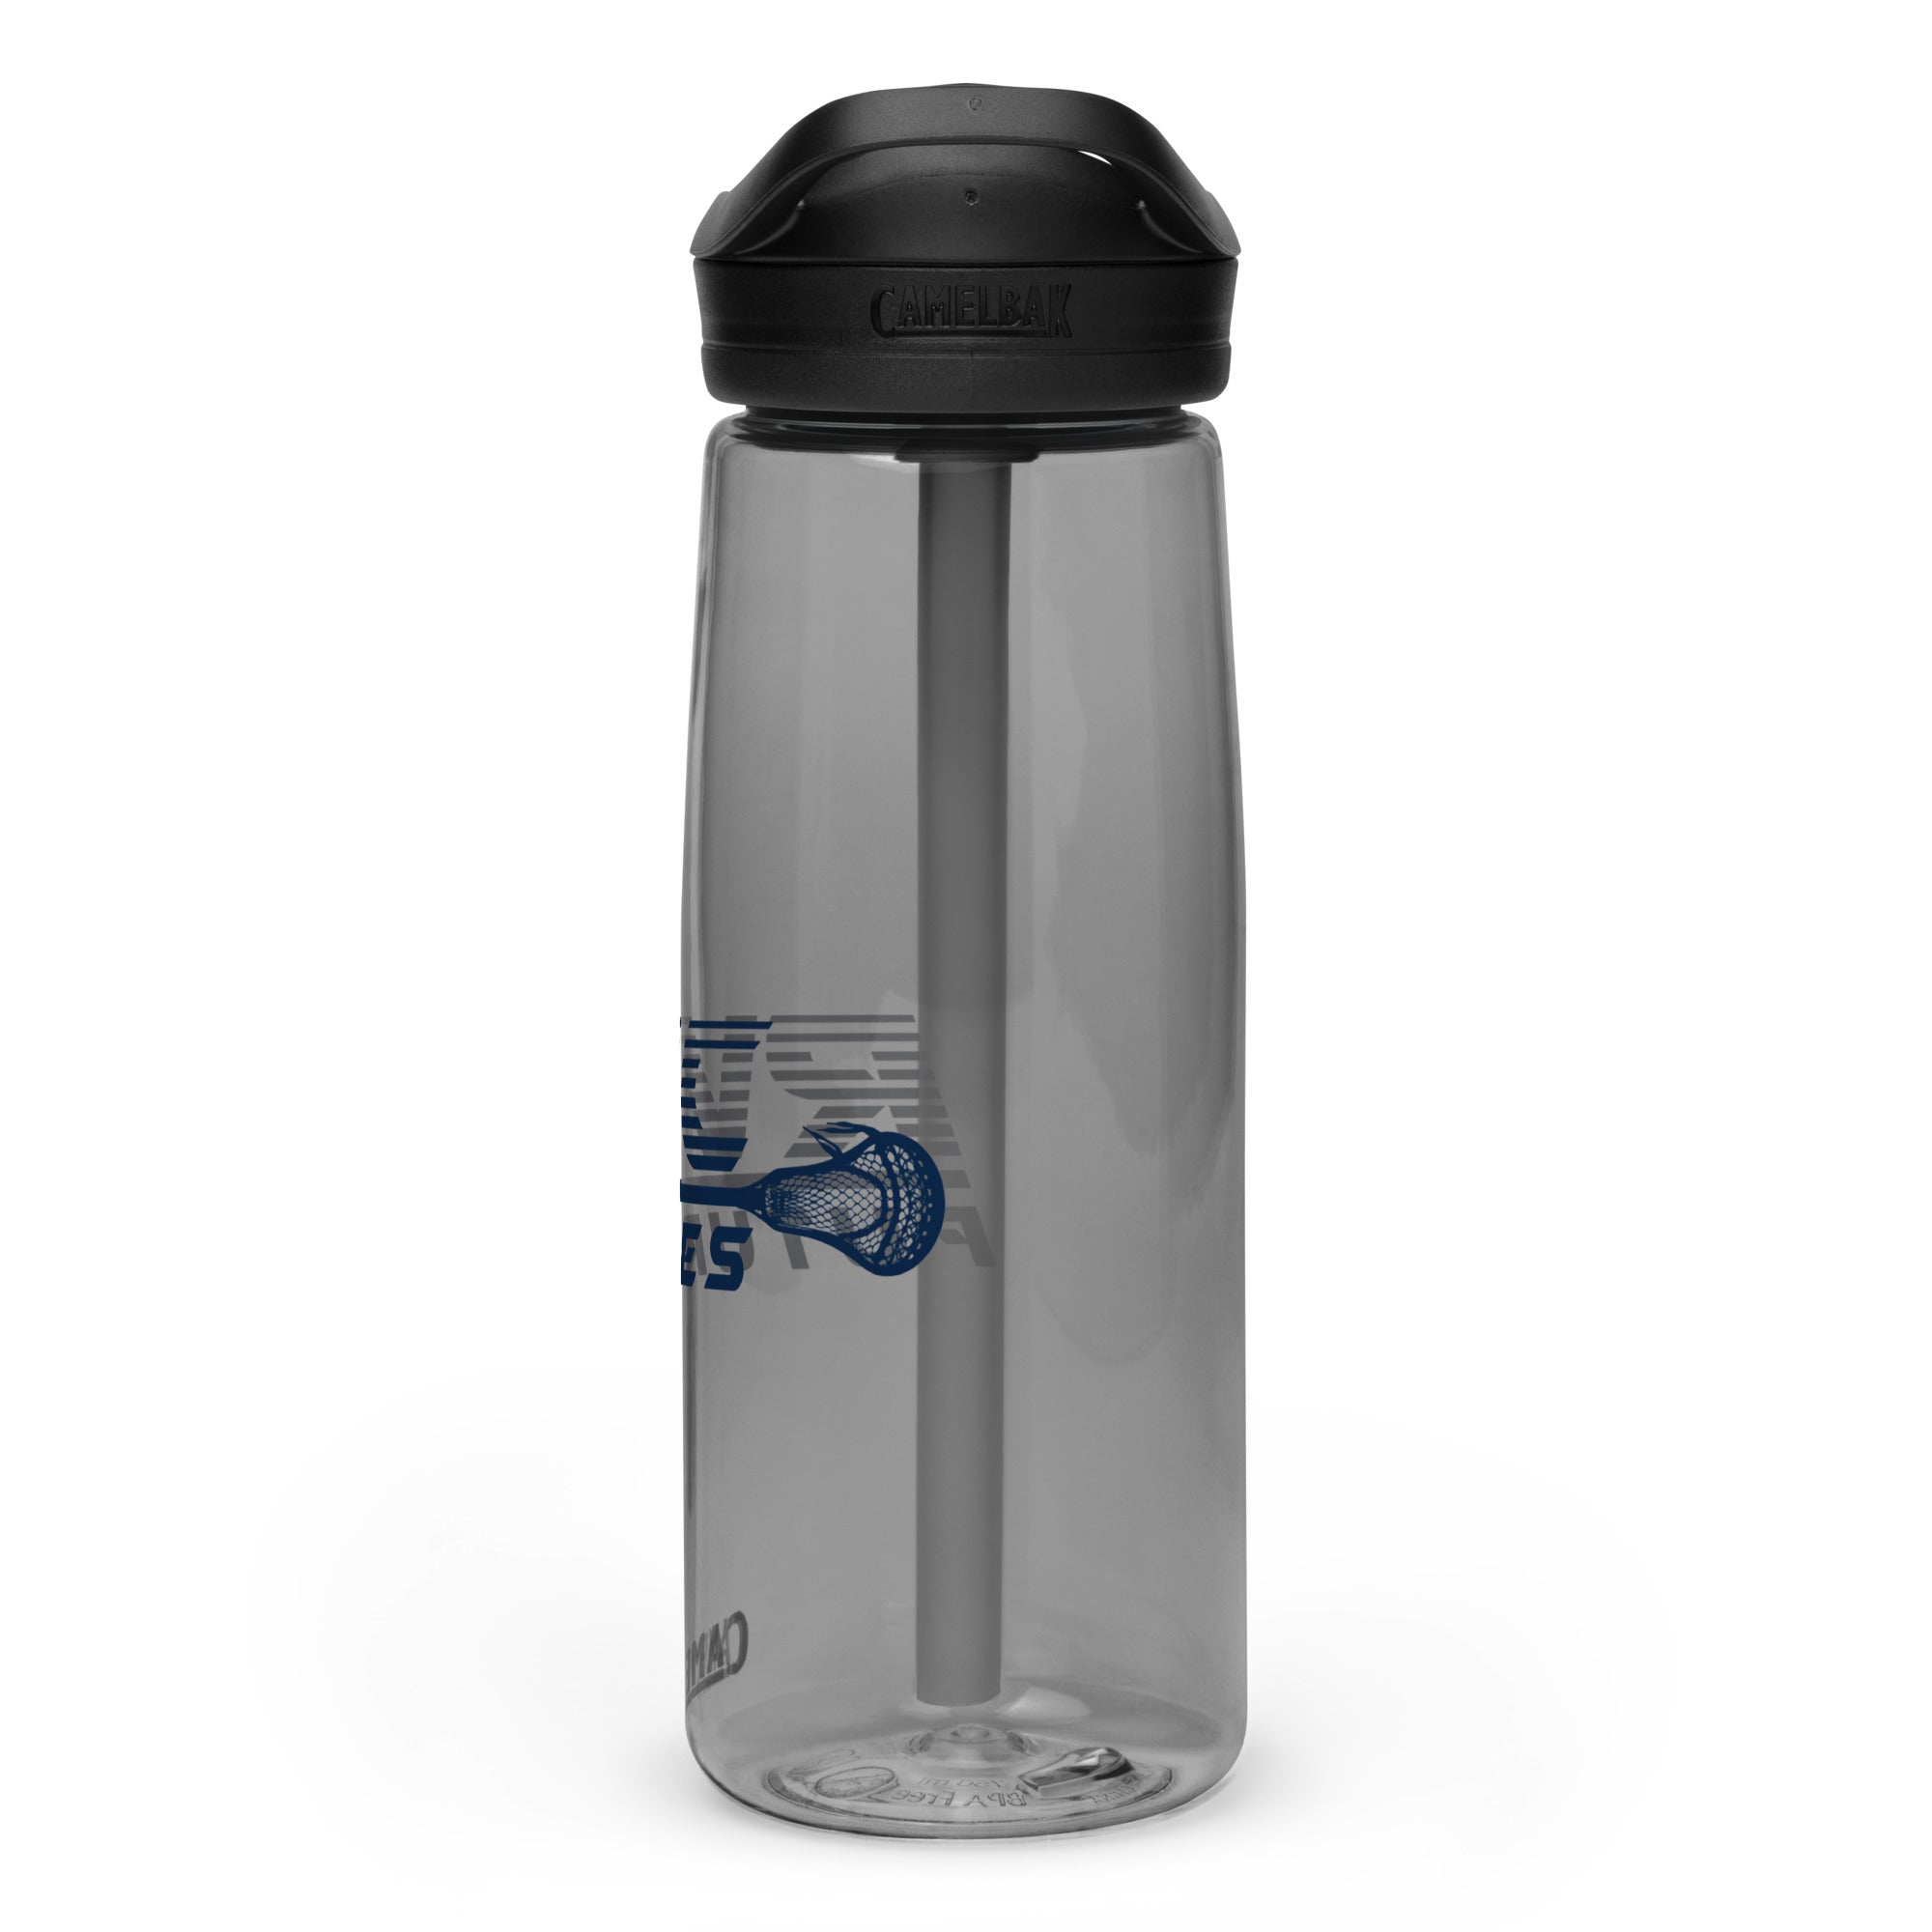 RVC Sports water bottle